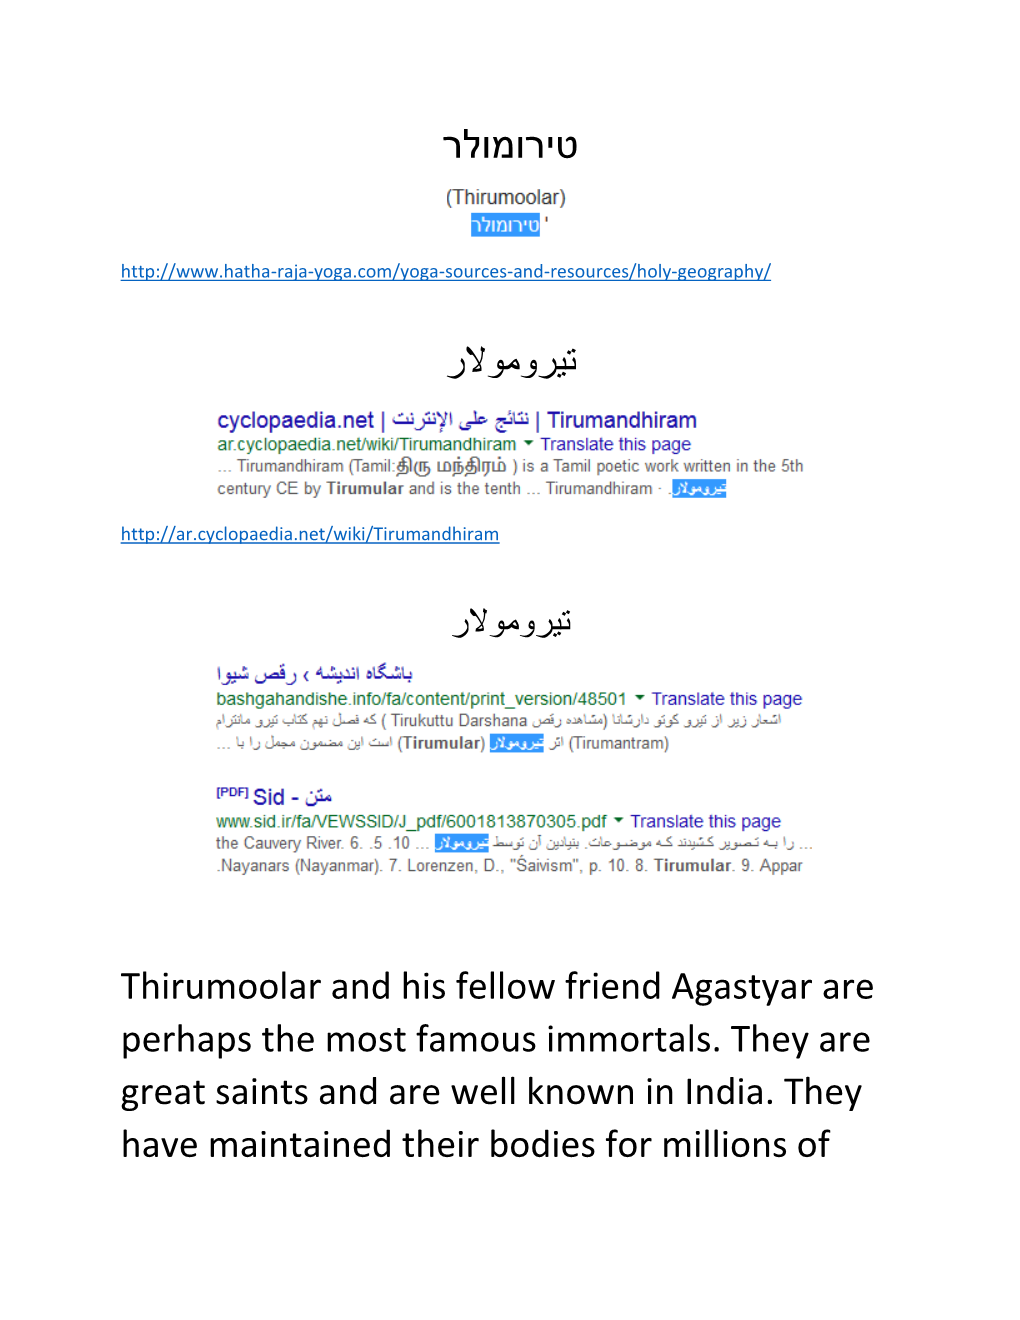 Tirumular - Wikipedia, the Free Encyclopedia